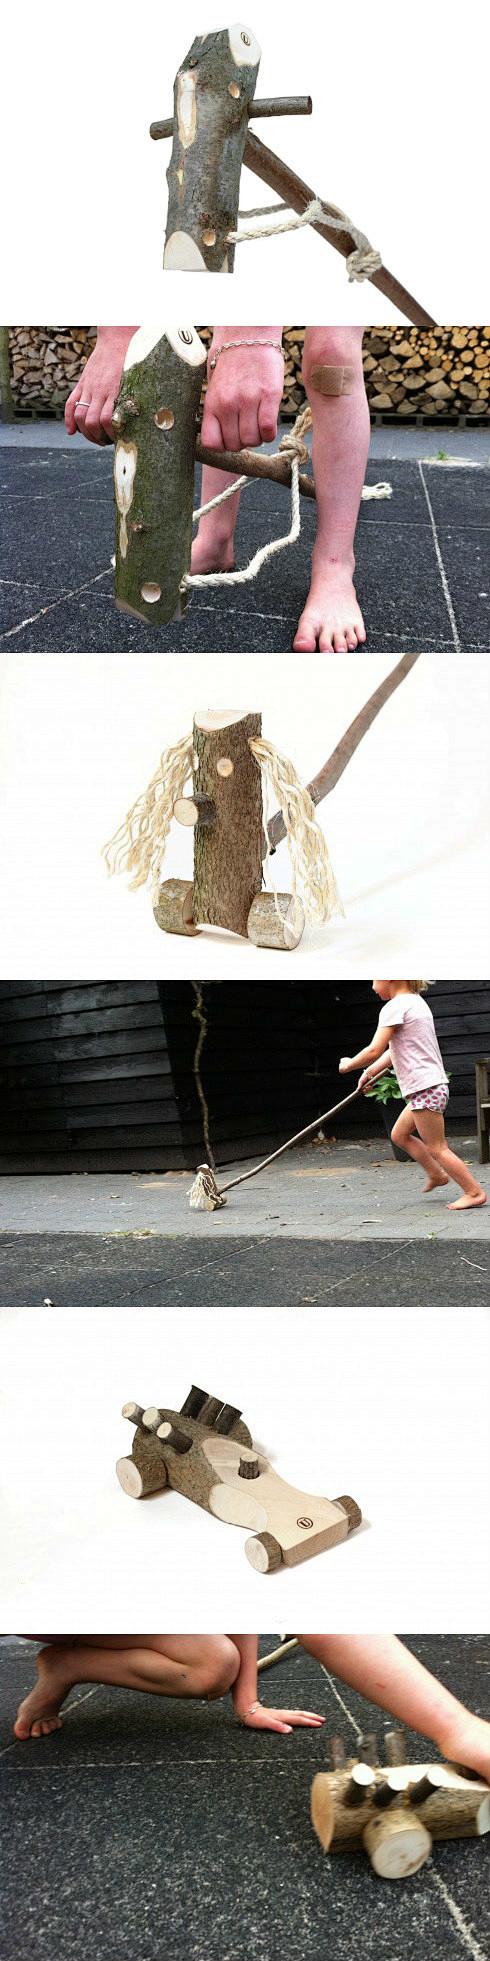 用废树枝做成的动物玩具